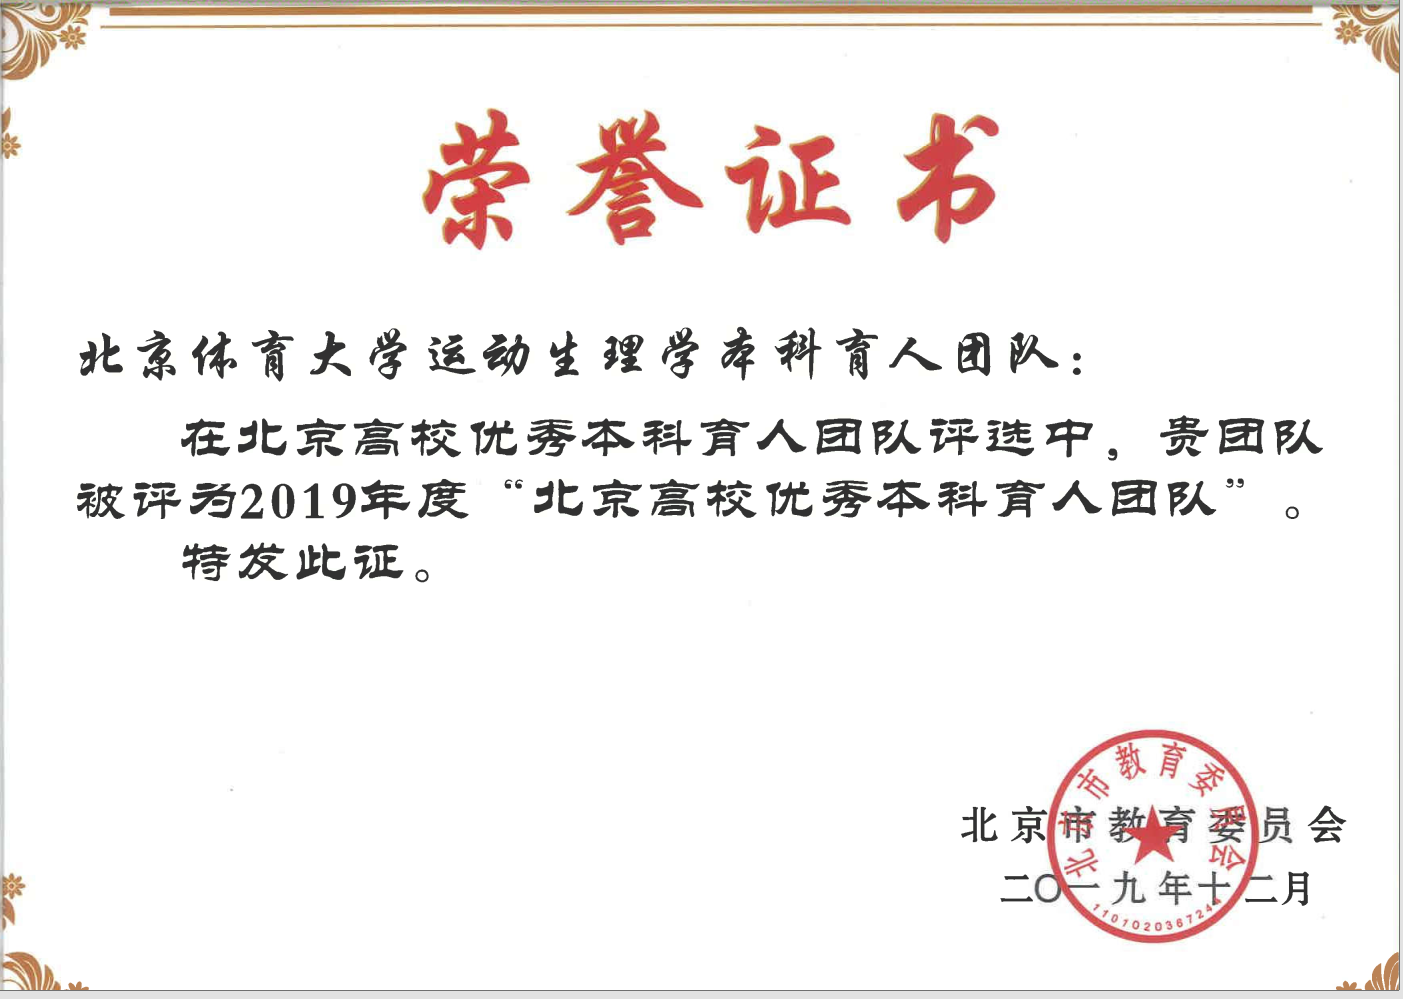 2019年运动生理教学团队获评首批北京高校优秀本科育人团队.png